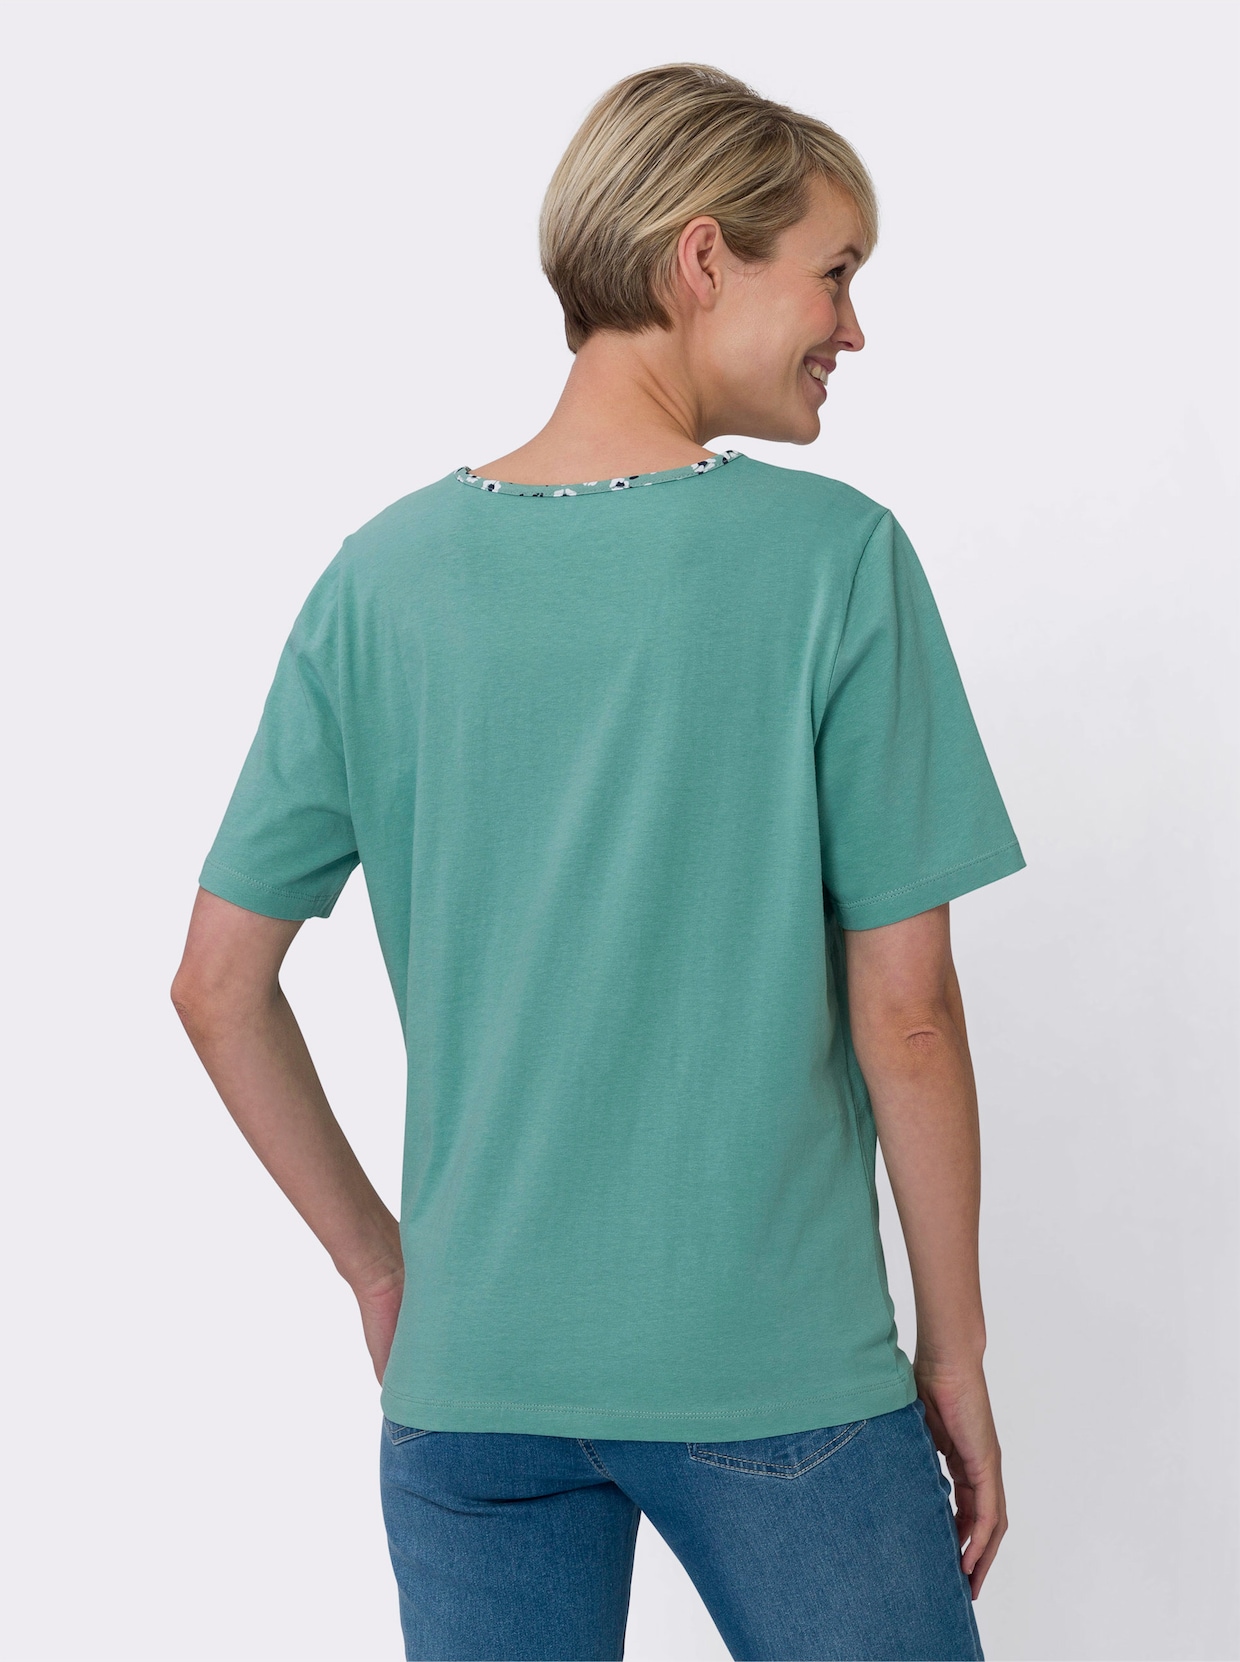 2-in-1-Shirt - salbei-weiss-bedruckt